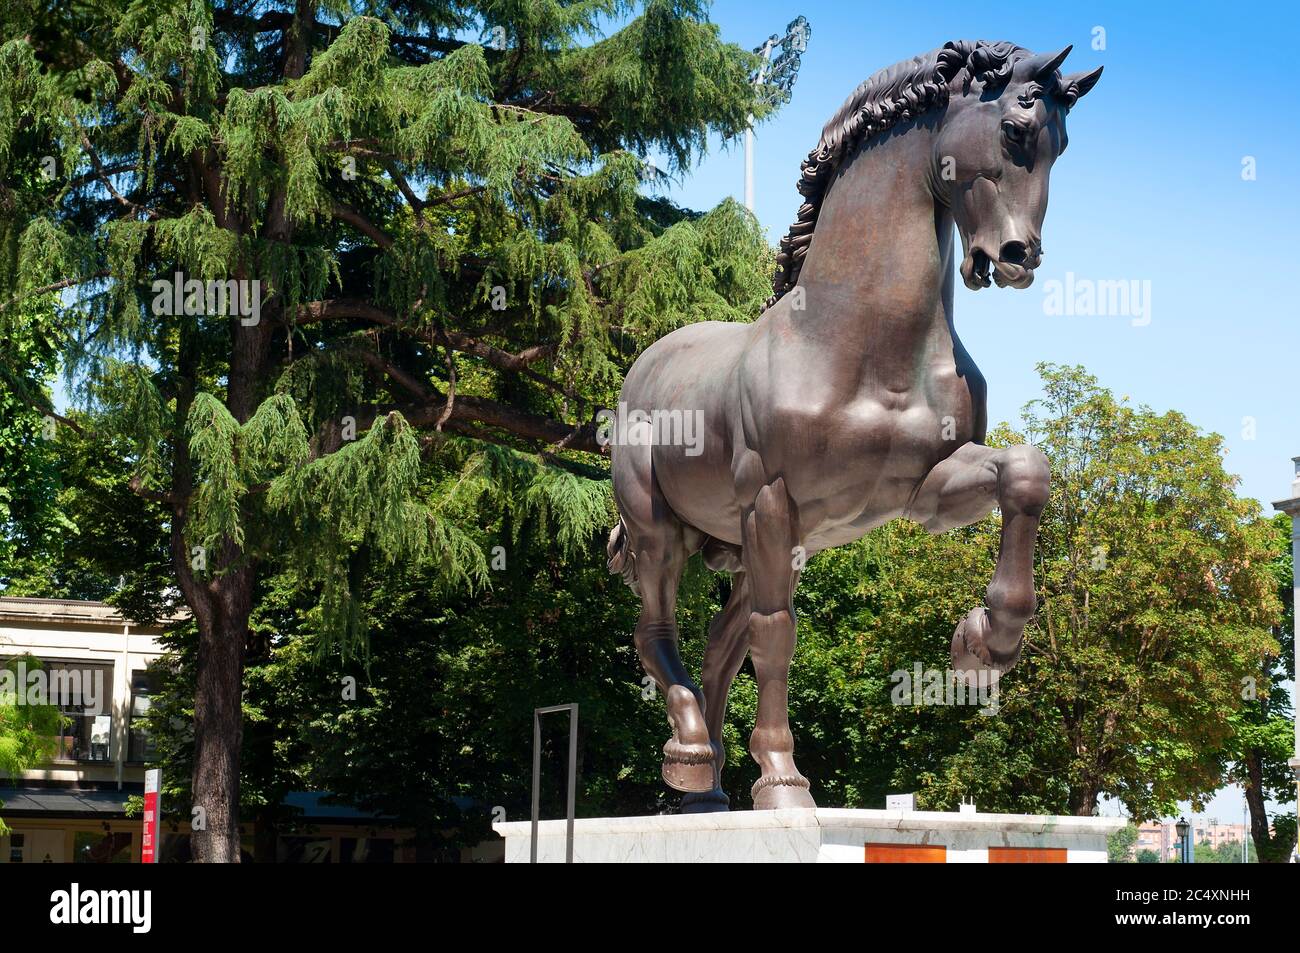 Italie, Lombardie, Milan, Hippodrome San Siro, Statue équestre de bronze dessins de l'artiste Léonard de Vinci Banque D'Images